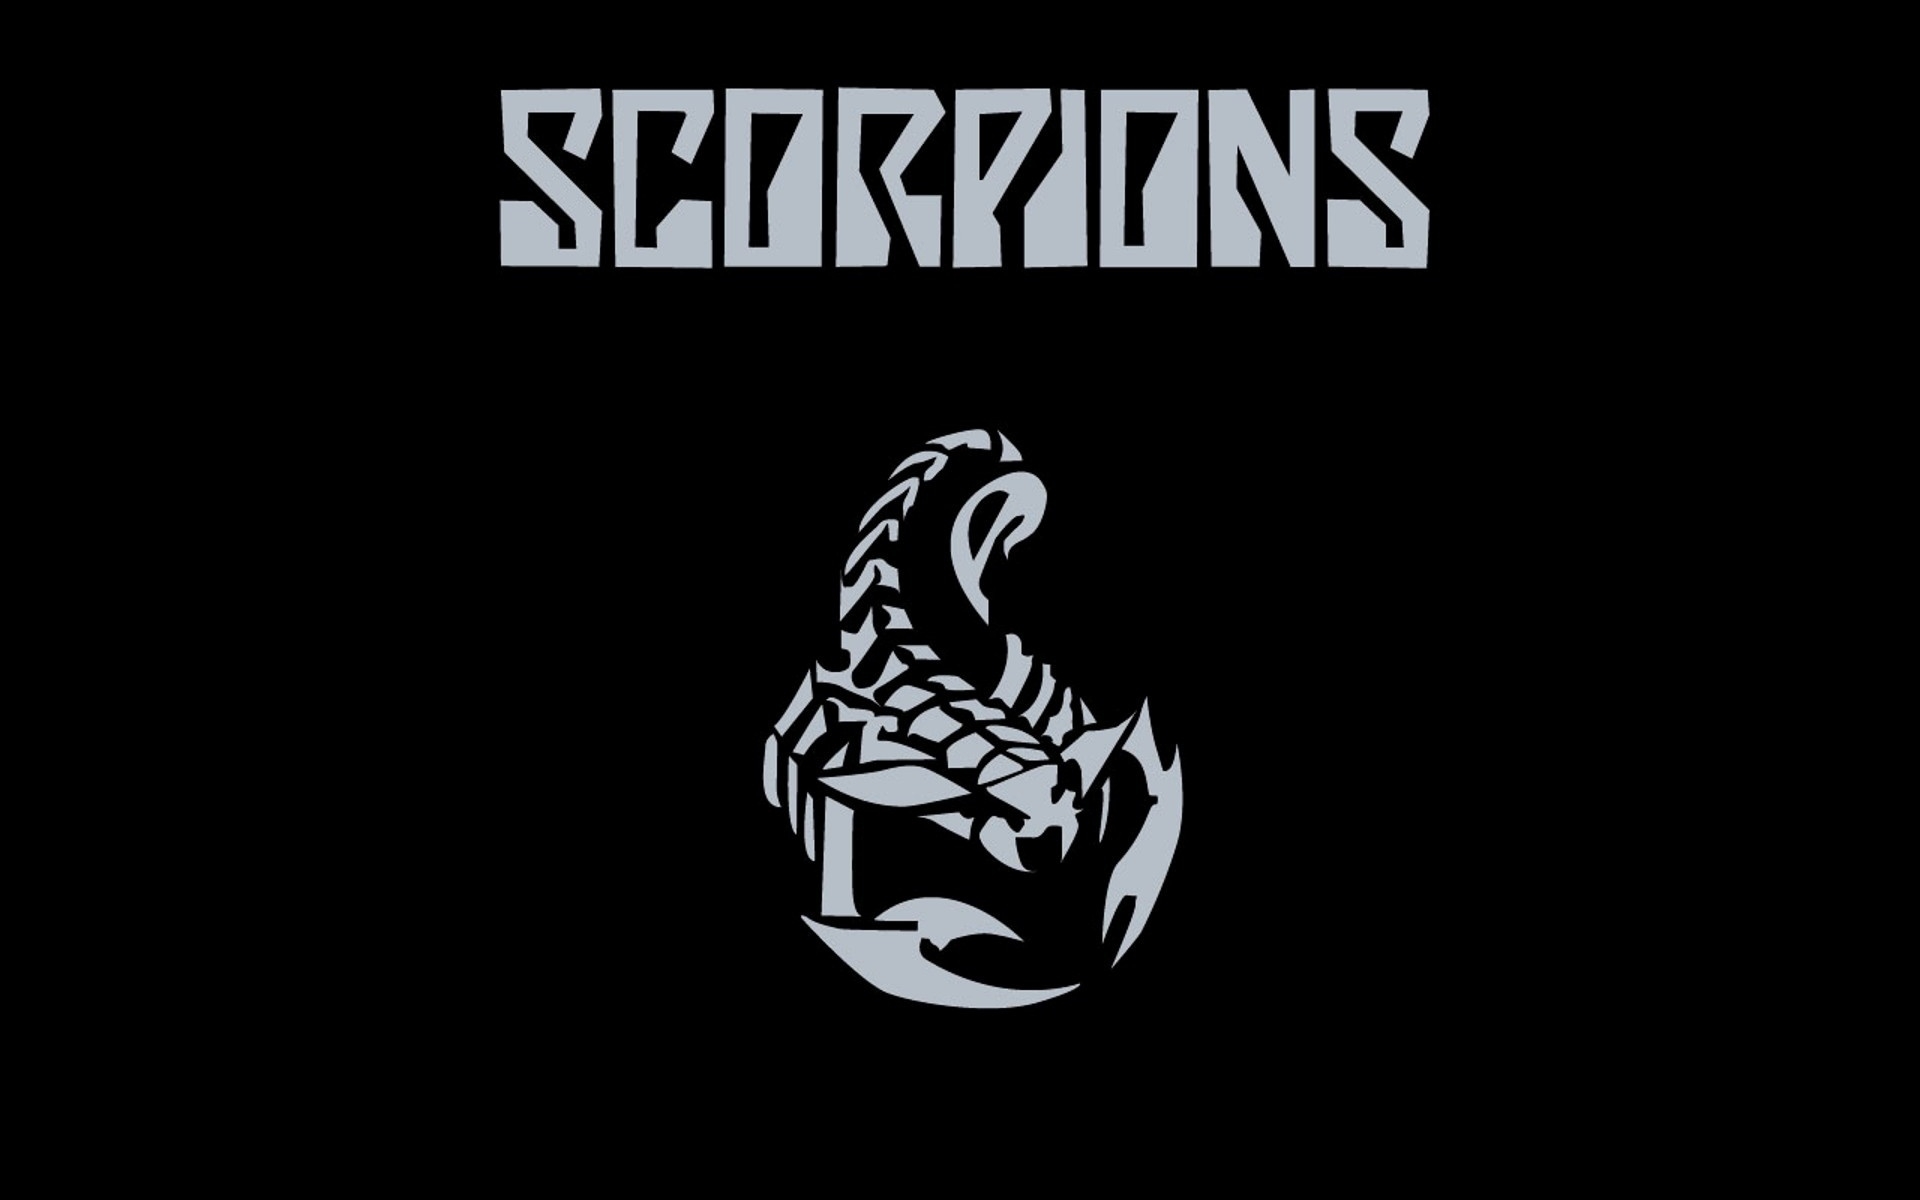 Scorpions Puter Wallpaper Desktop Background Id